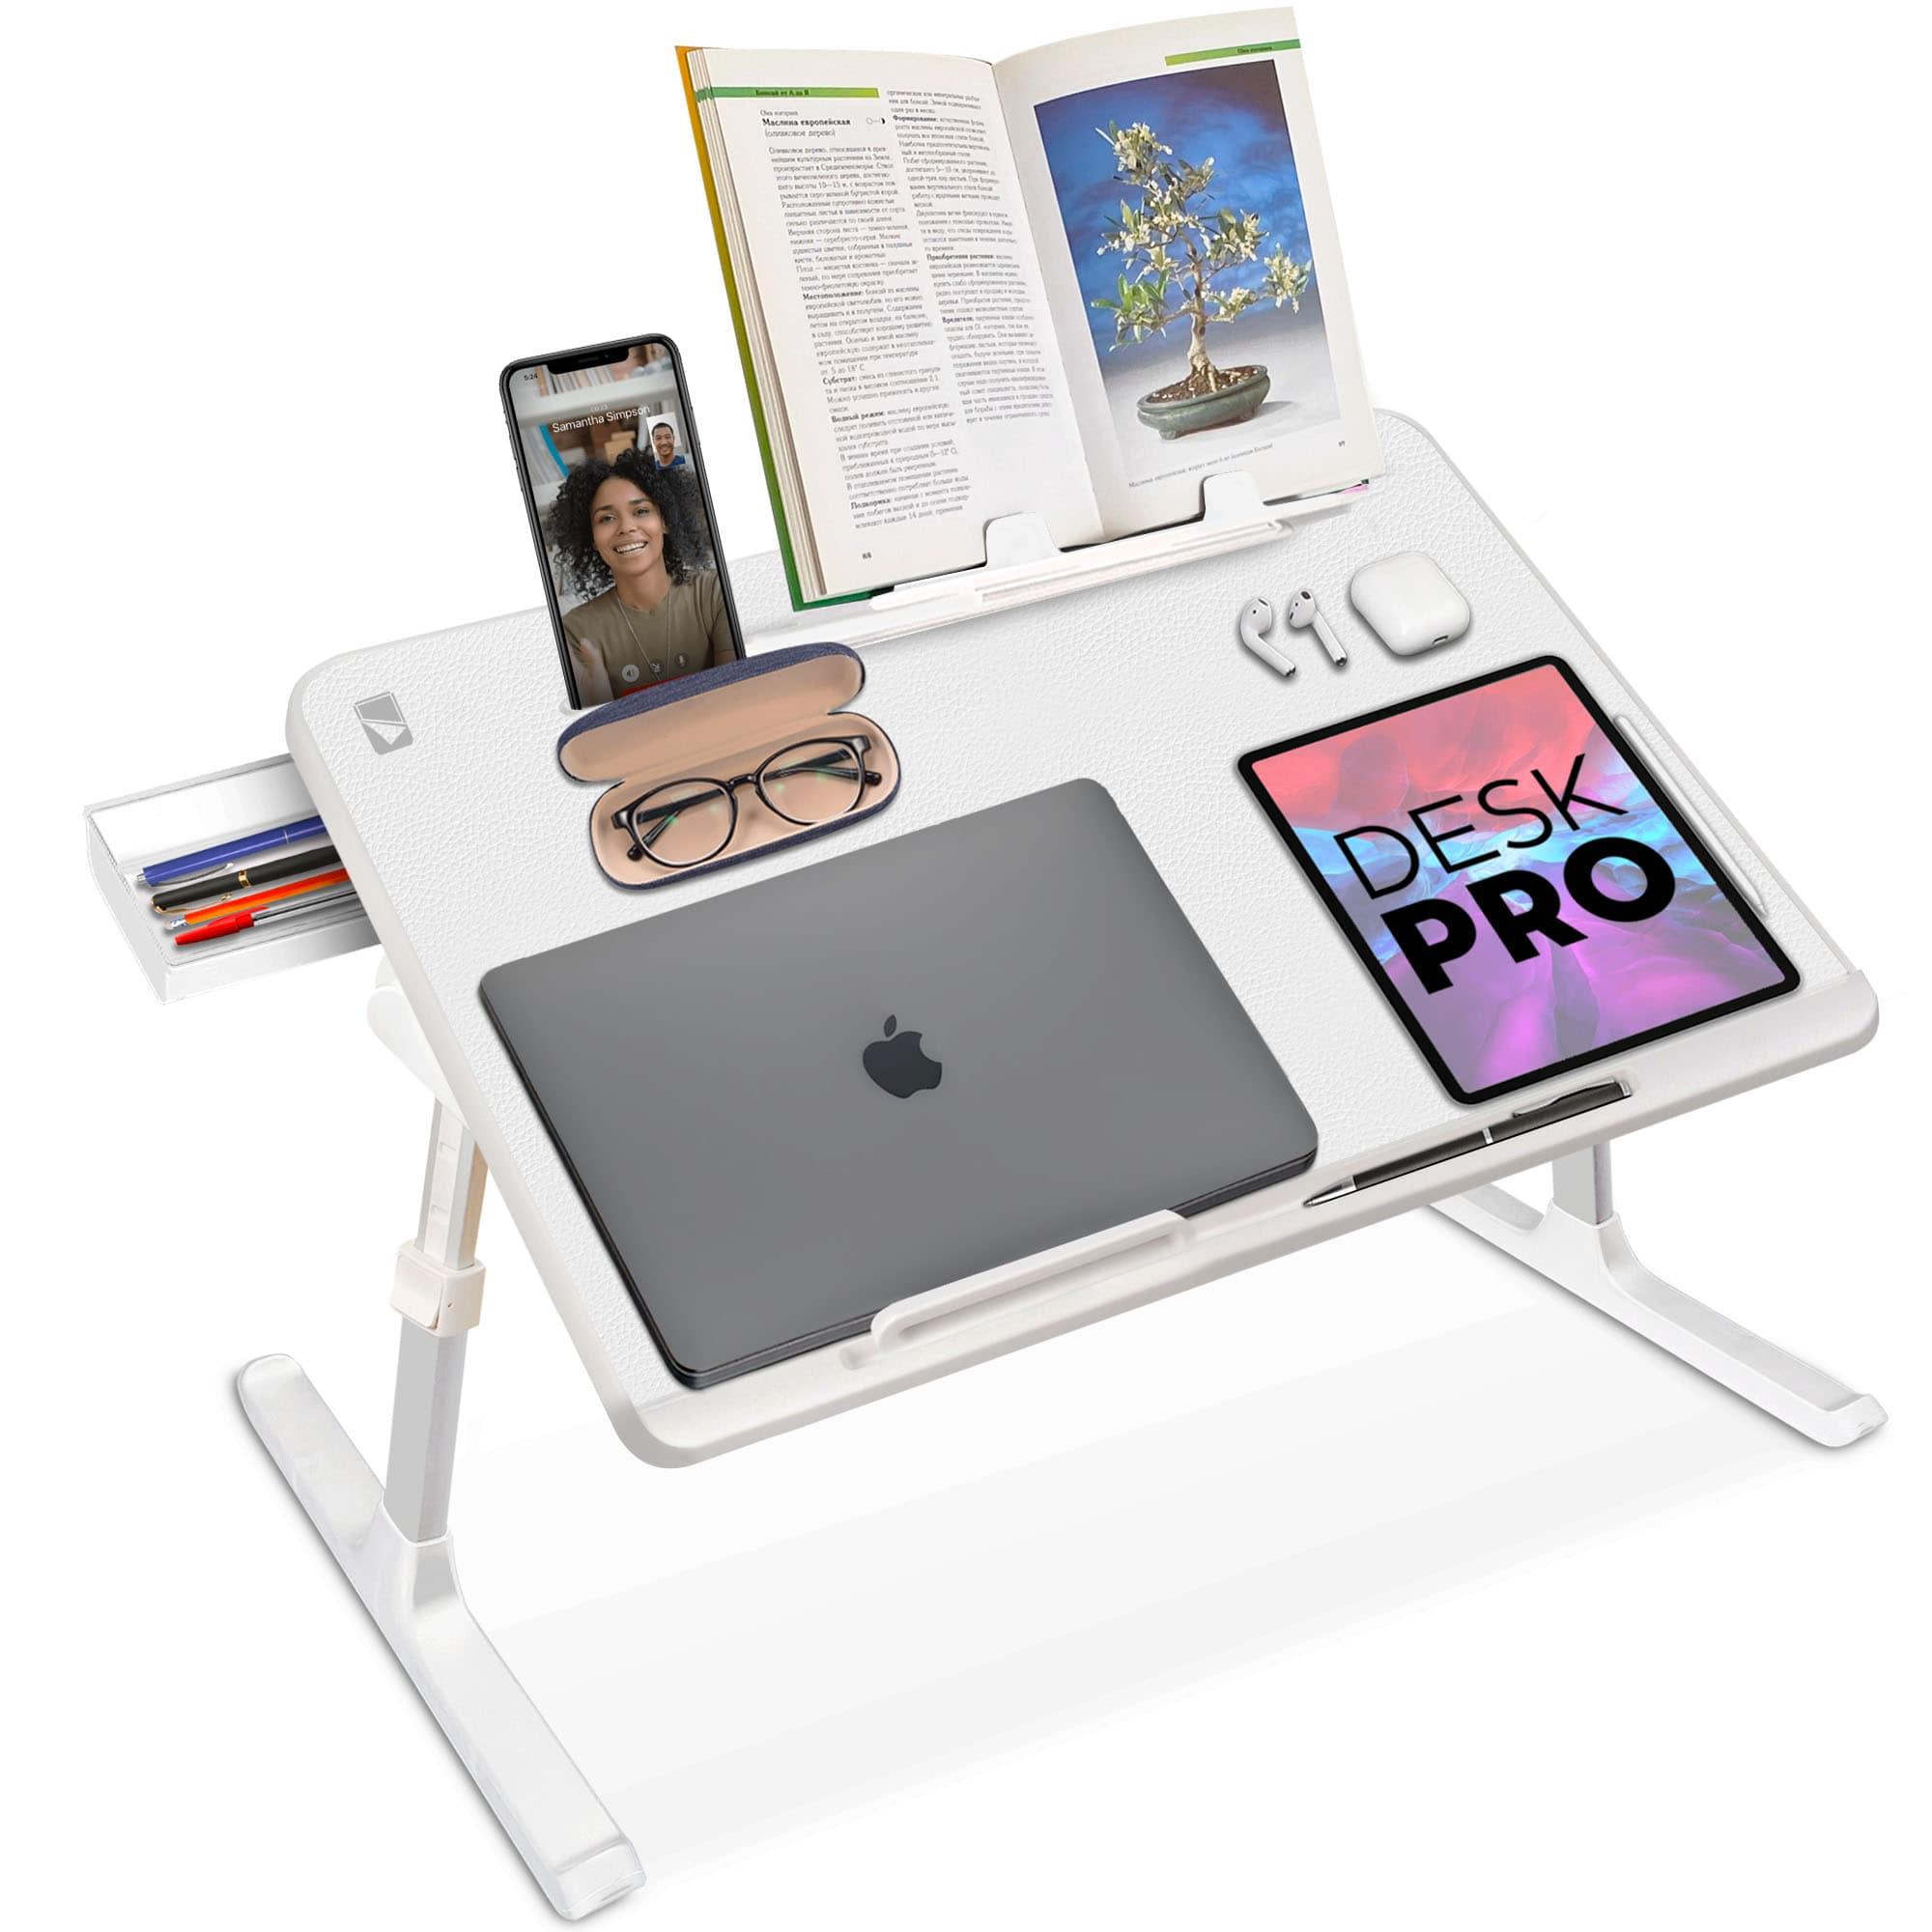 Kupo Nonslip Pad for Tethermate Laptop Table